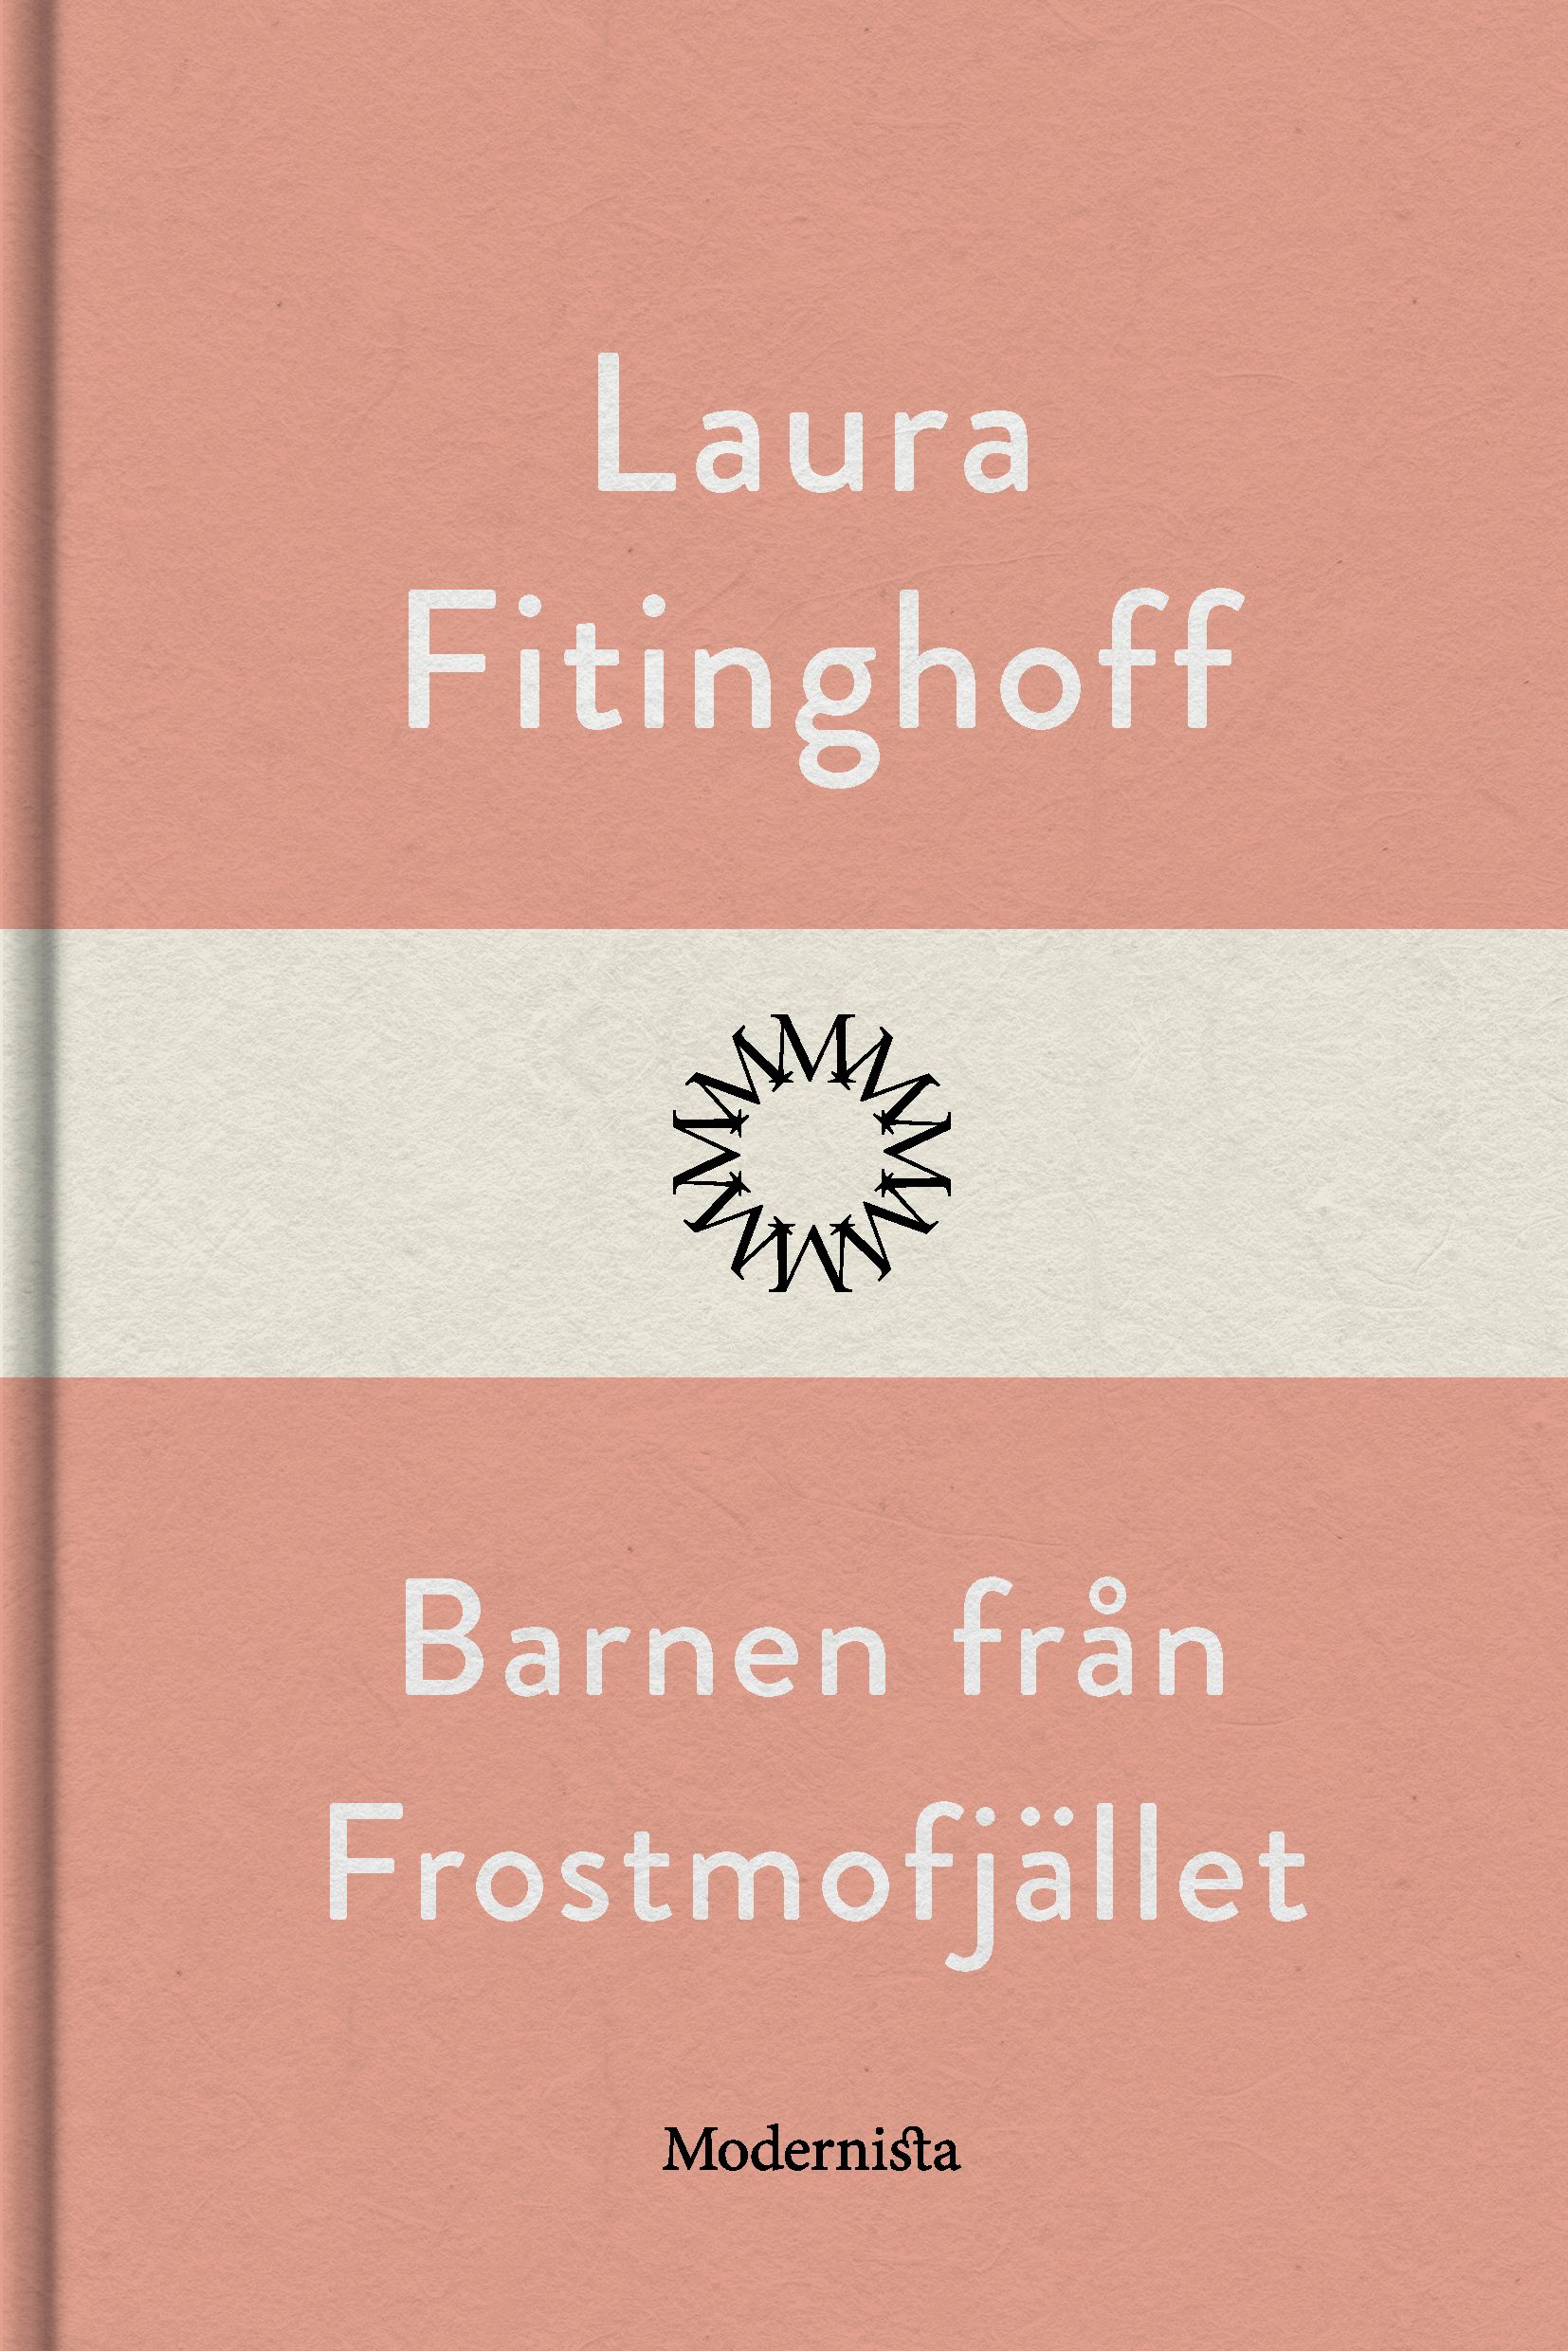 Barnen från Frostmofjället, e-bok av Laura Fitinghoff